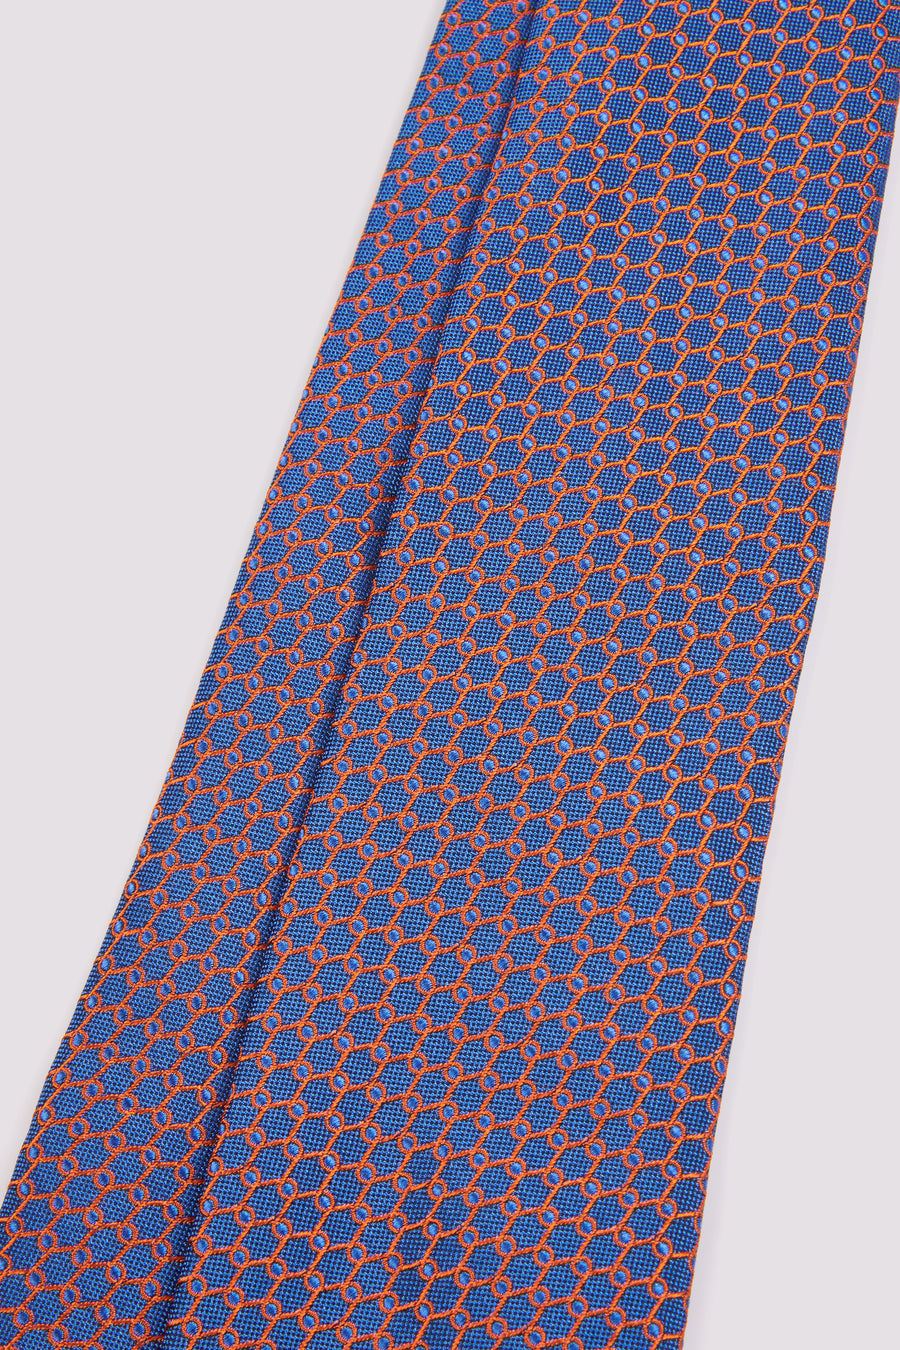 100% Silk Tie Loop Pattern French Navy